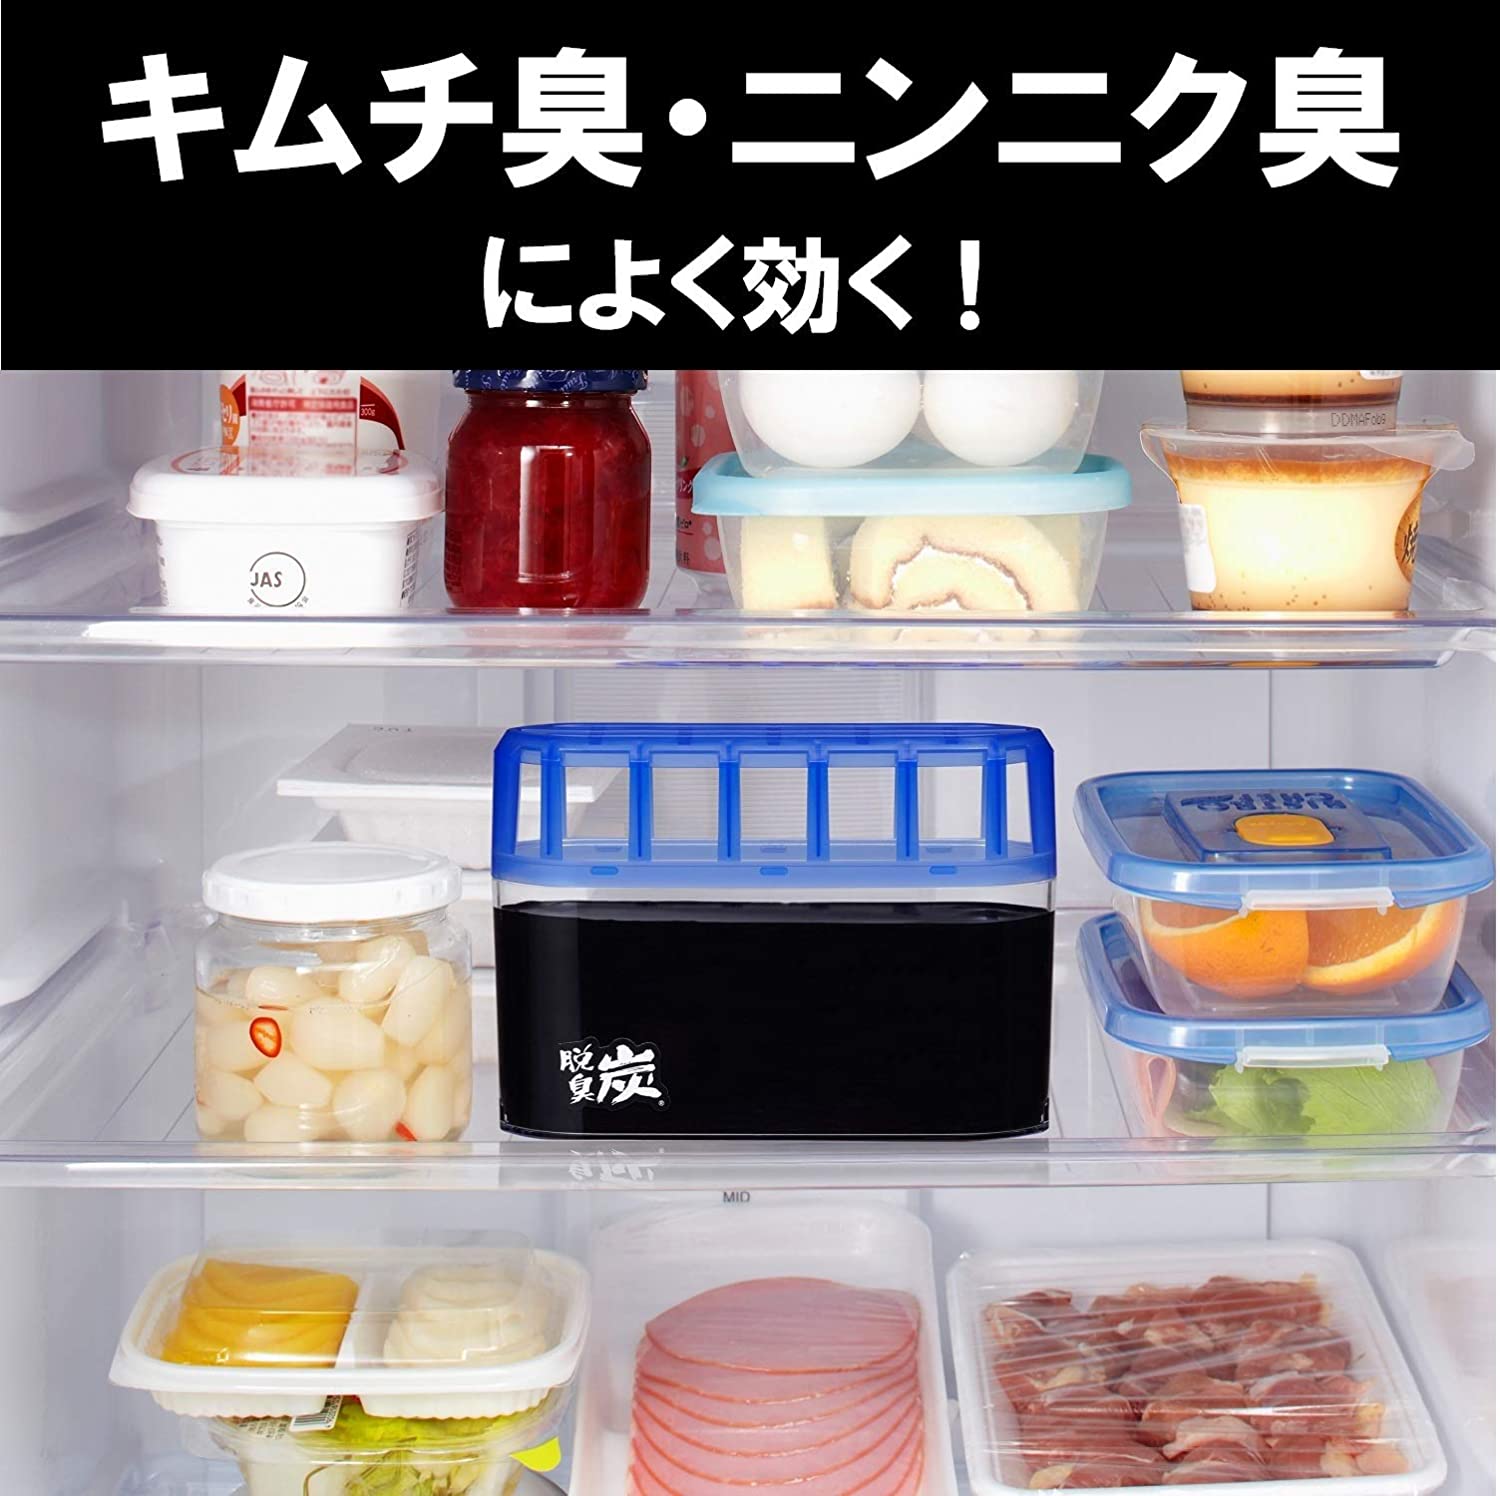 Hộp khử mùi tủ lạnh cao cấp (loại cực mạnh) Kokubo 200g hàng nhập khẩu chính hãng (Made in Japan)